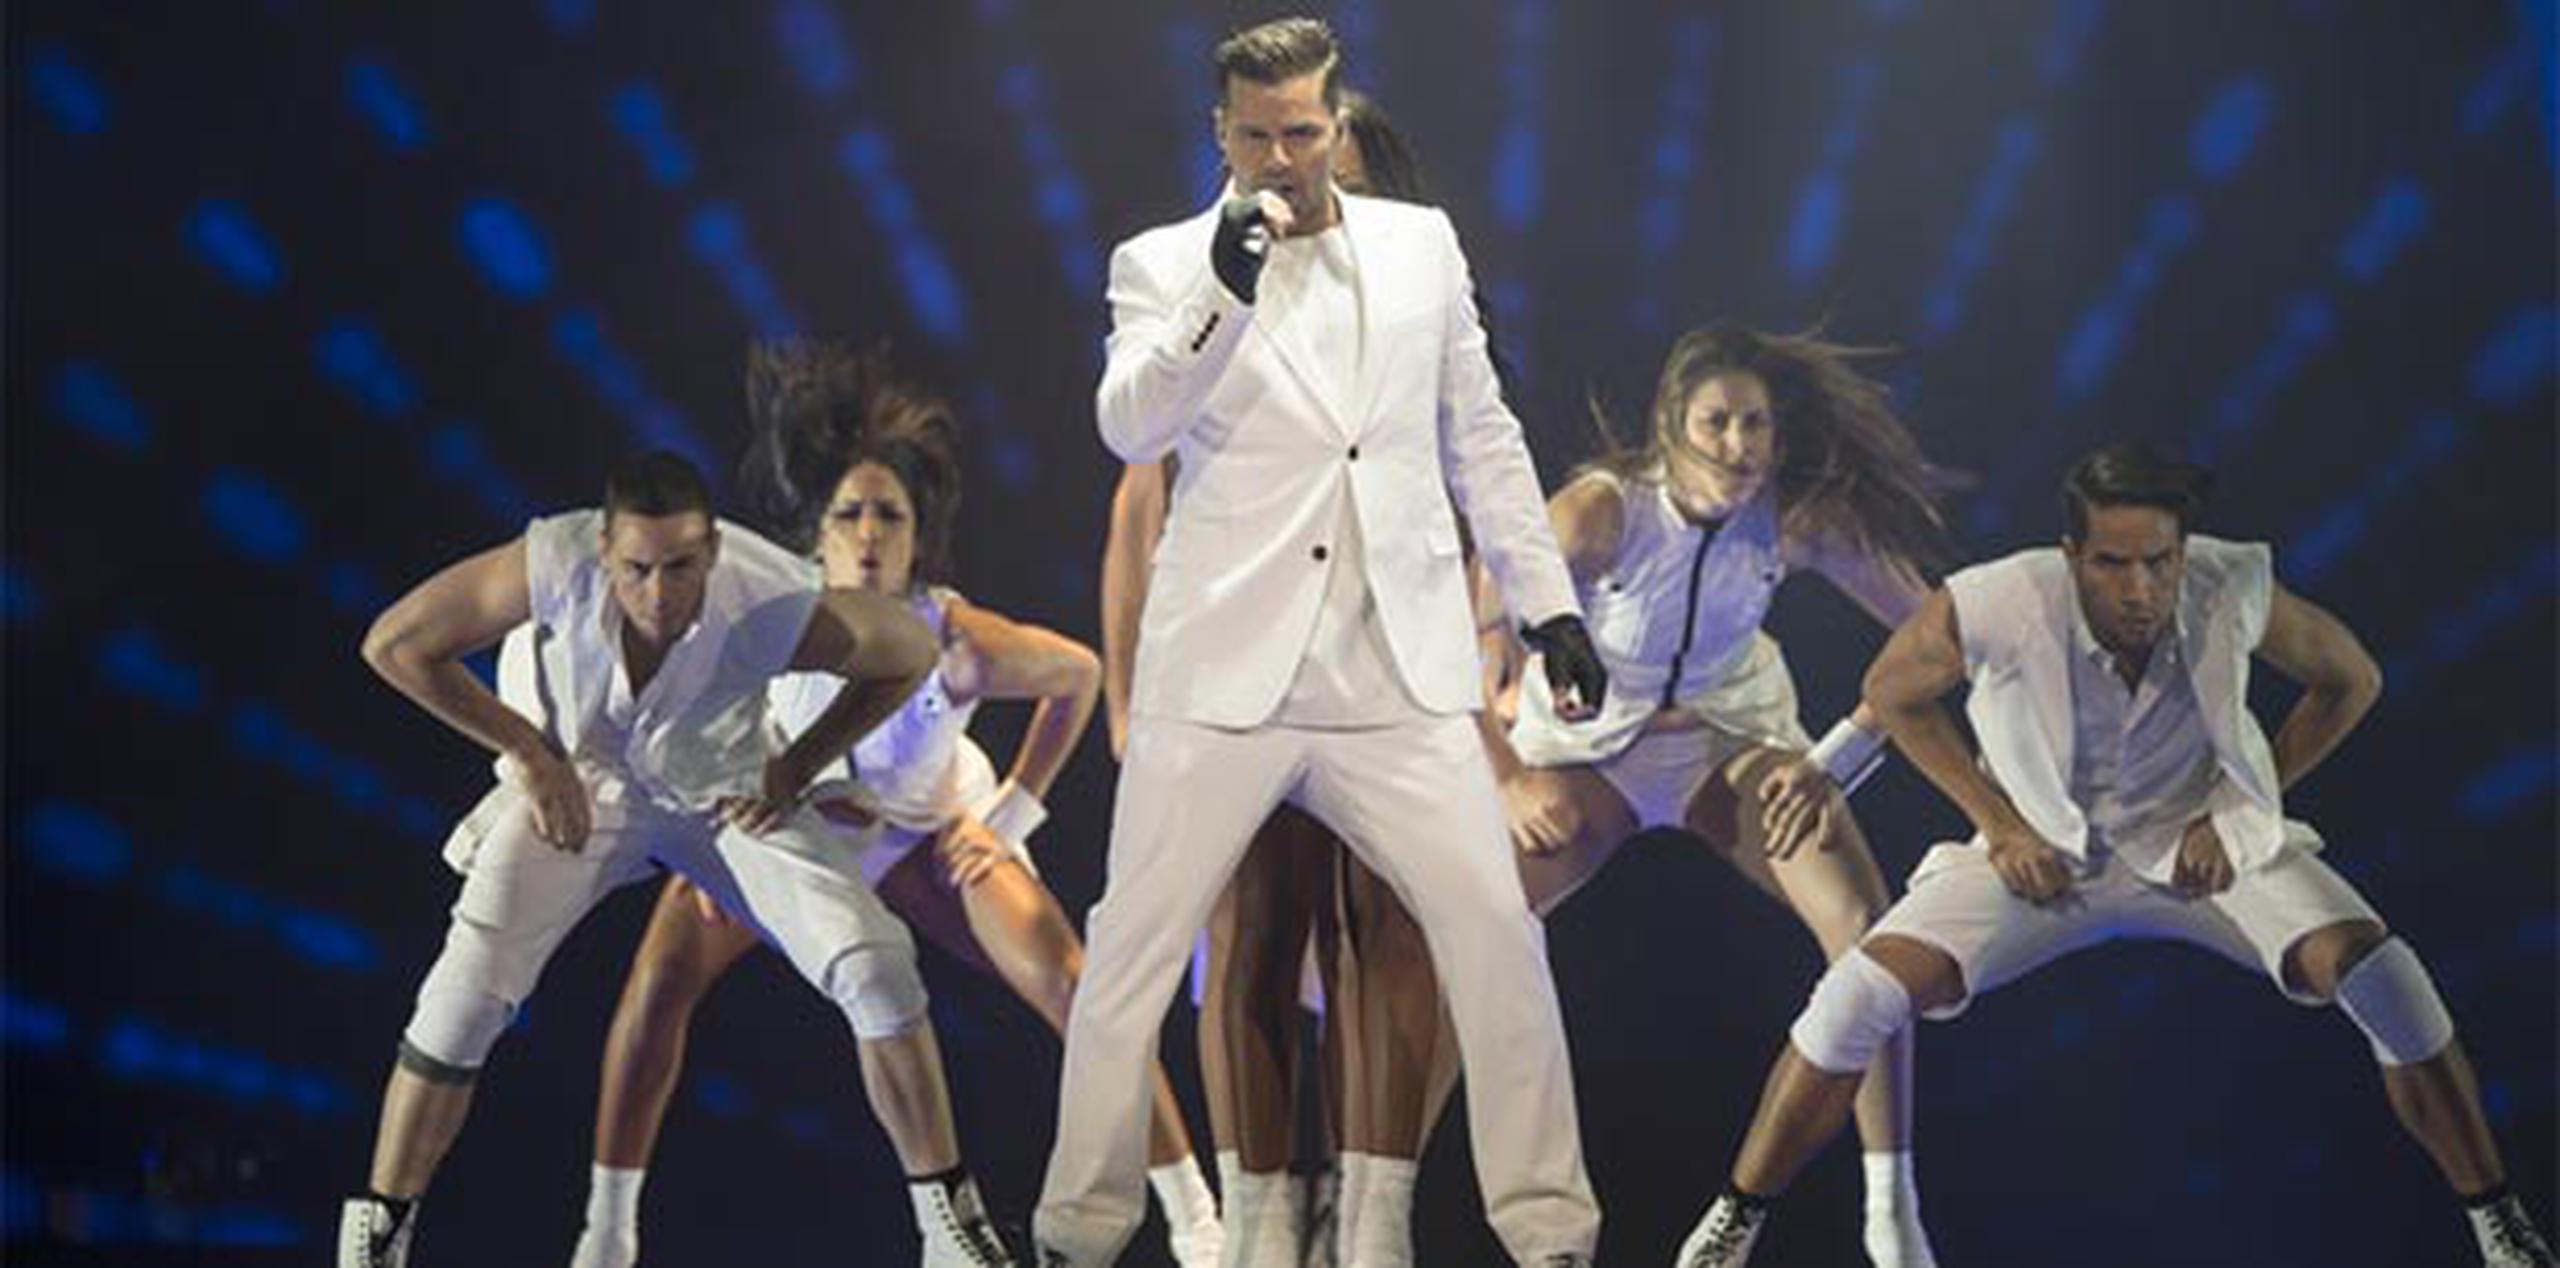 El artista Ricky Martin abrió el concierto con su más reciente éxito "Come With Me". (Suministrada)